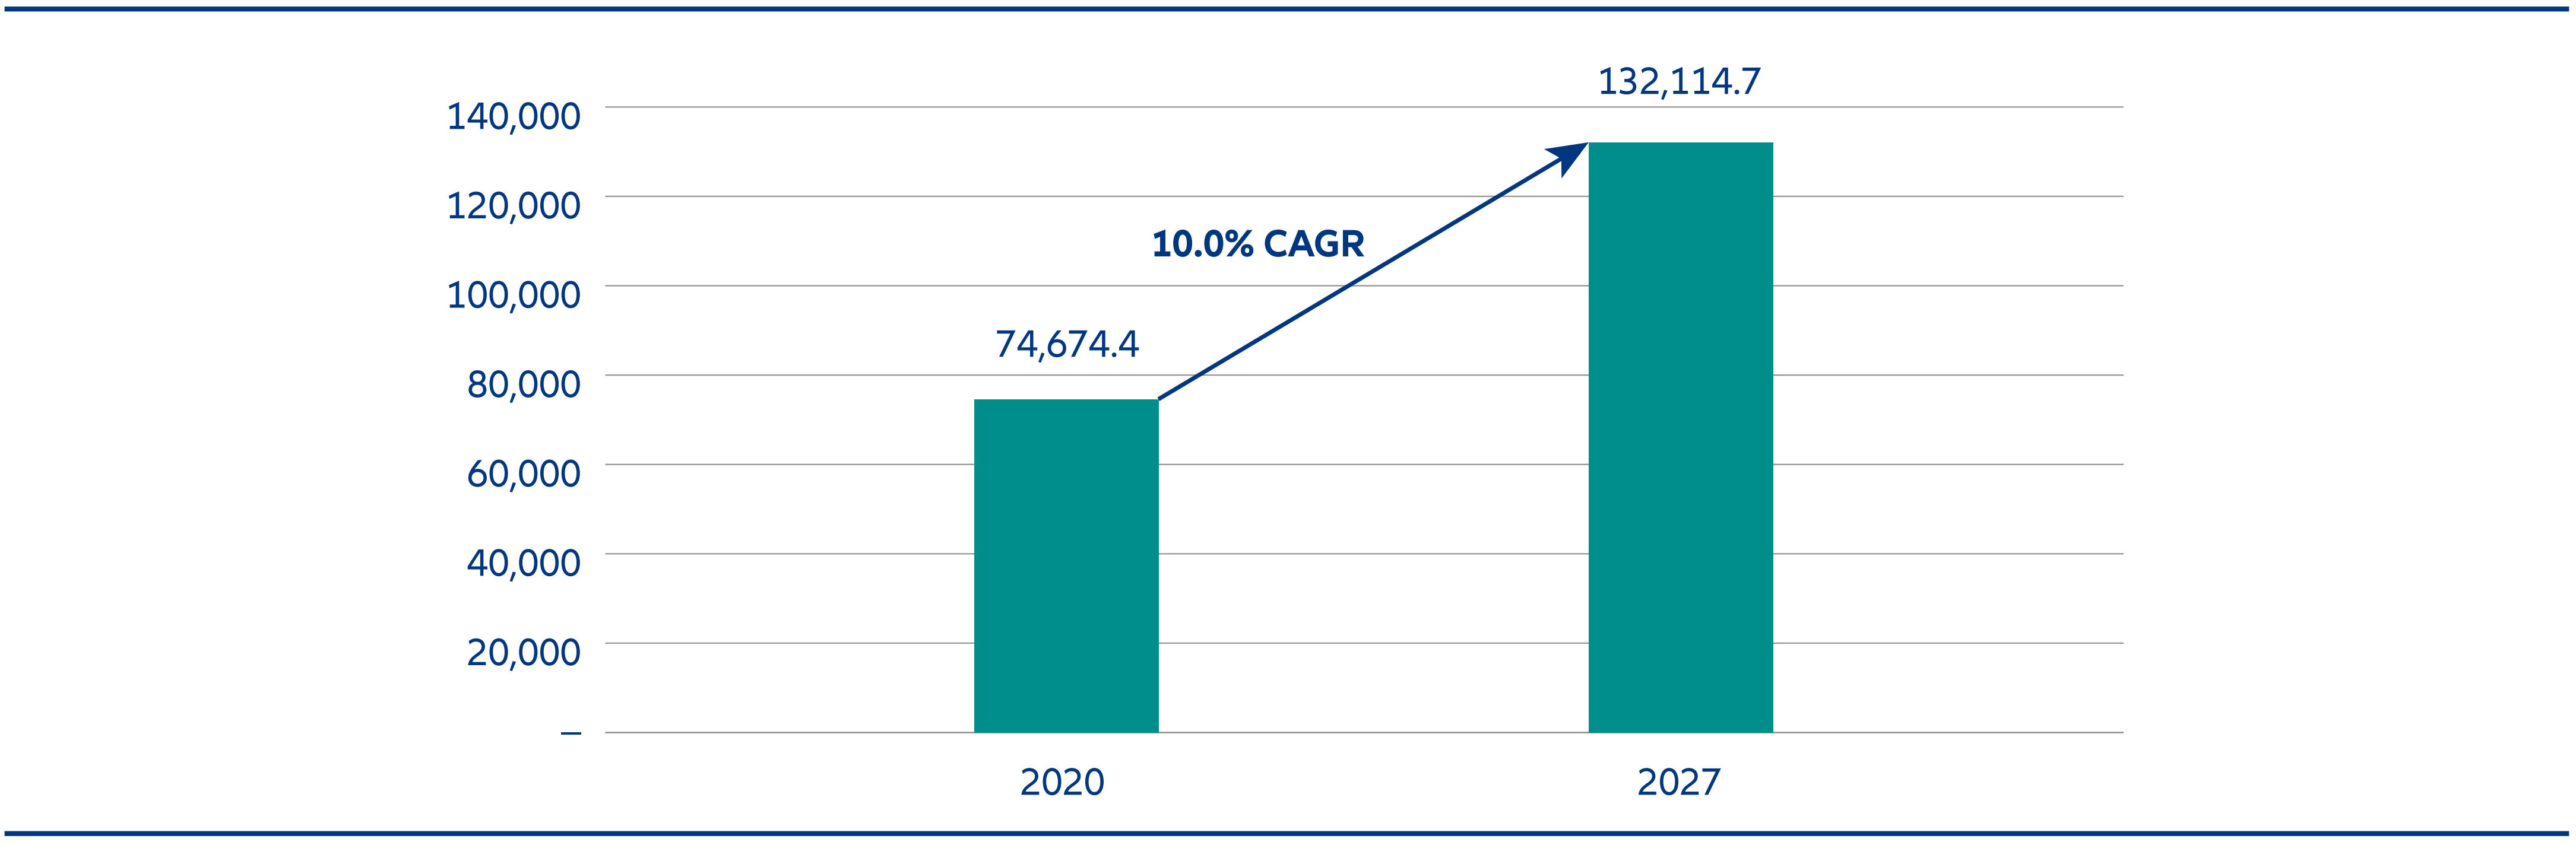 アジア太平洋のペットケア市場、2021年と2027年（単位：百万米ドル）